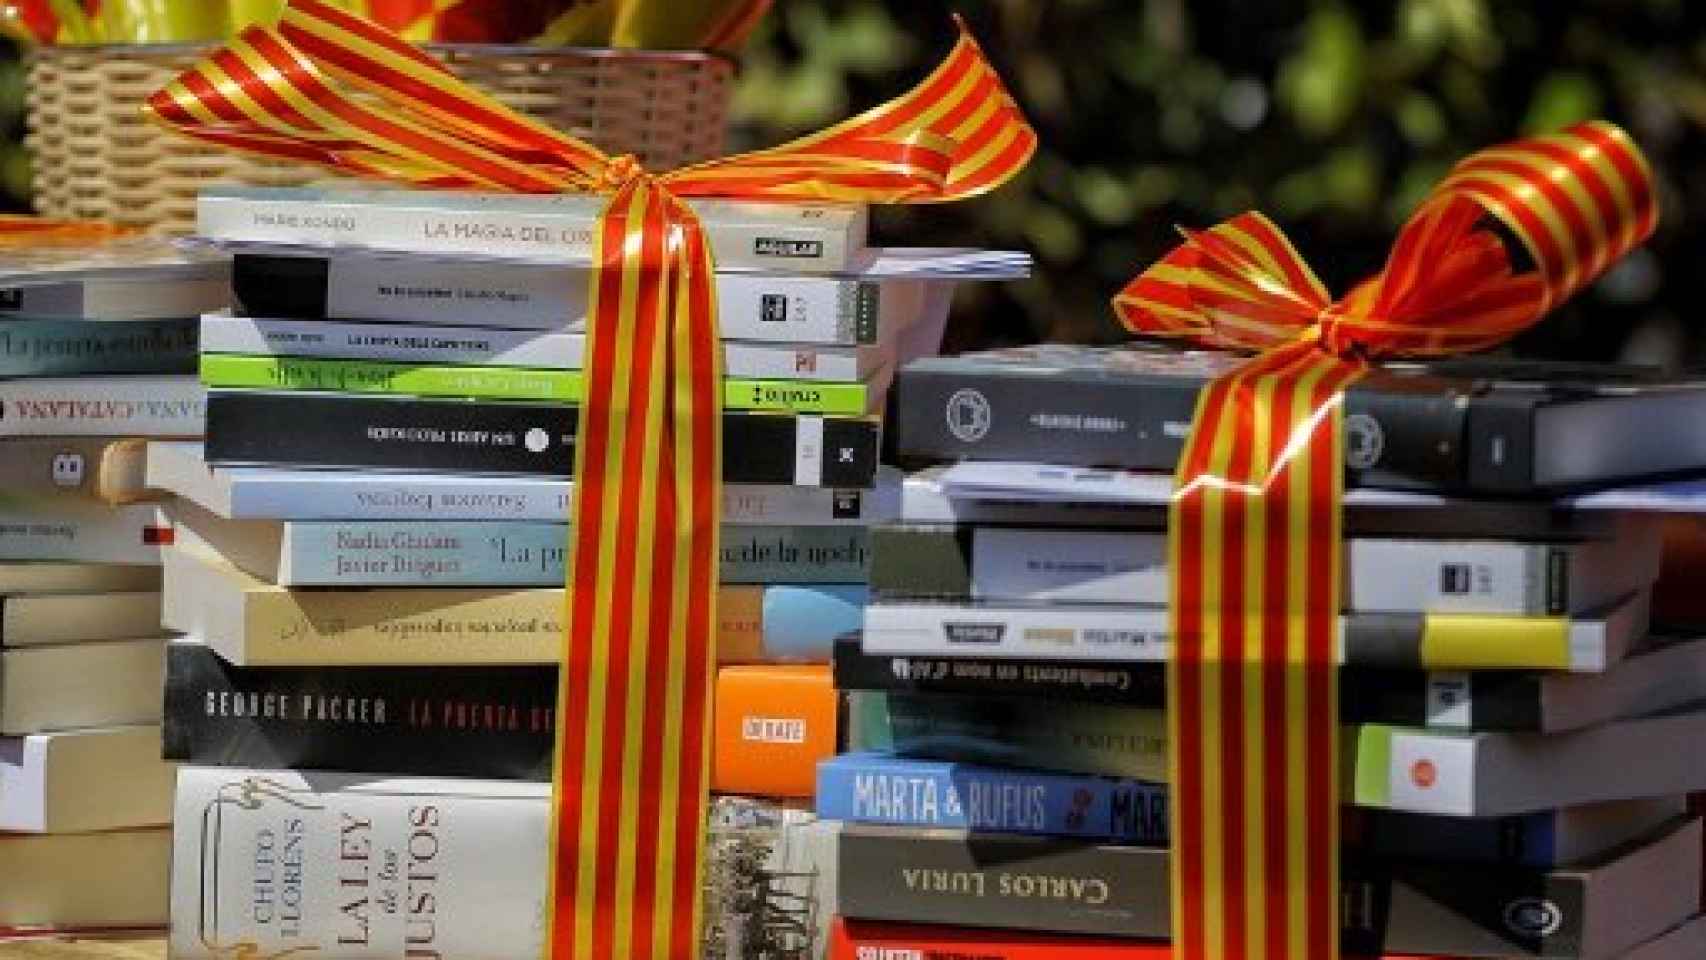 Libros envueltos por una cinta con la bandera catalana.